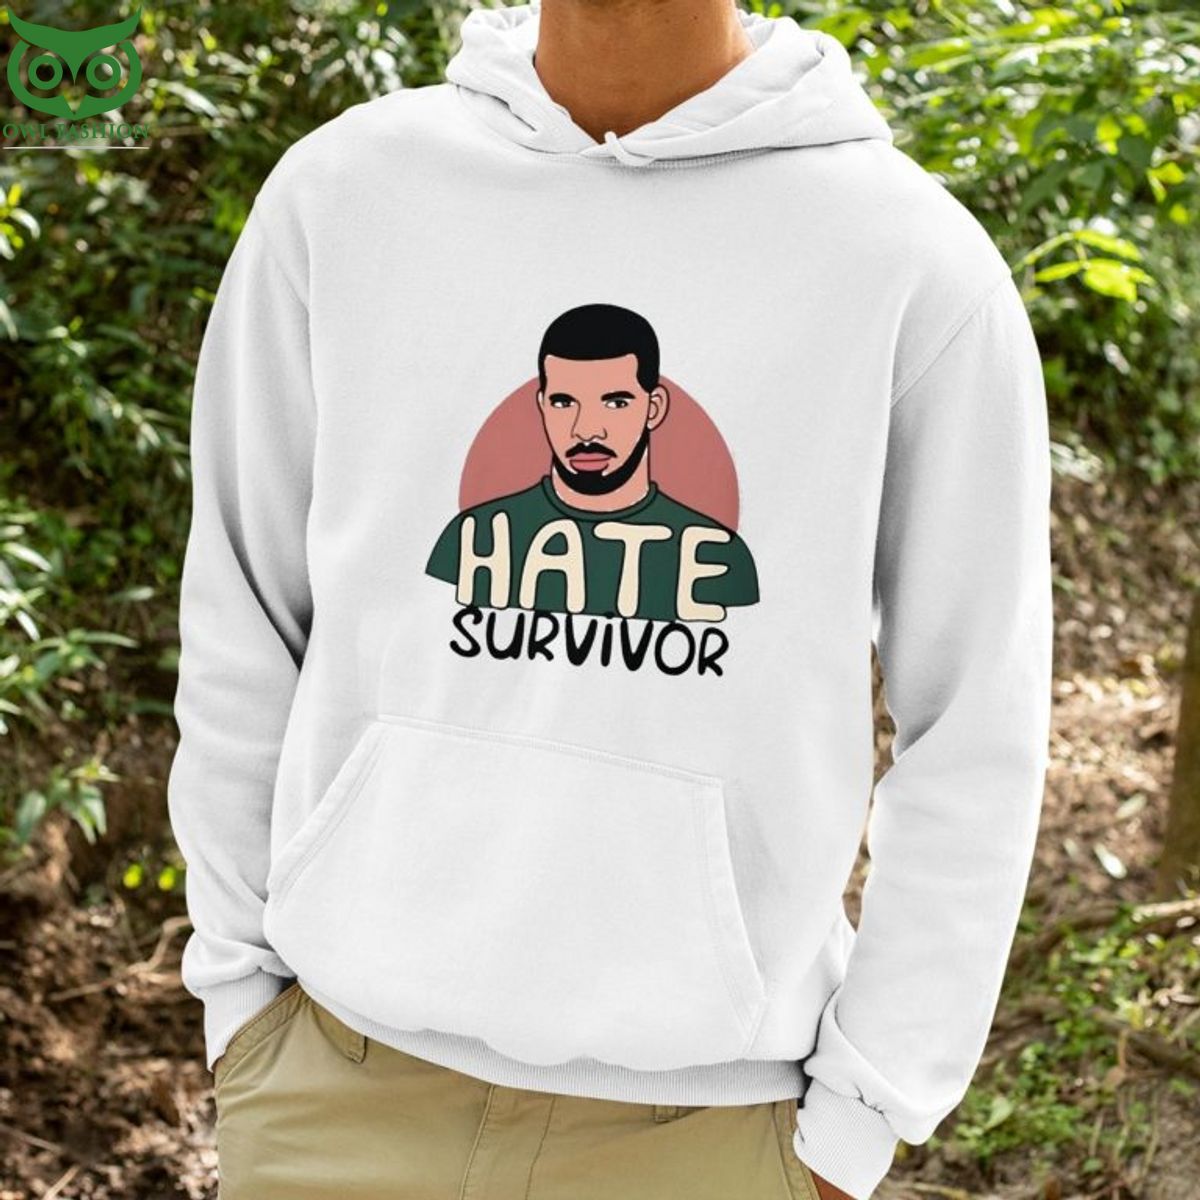 Drake Hate Survivor Hoodie Shirt Trending